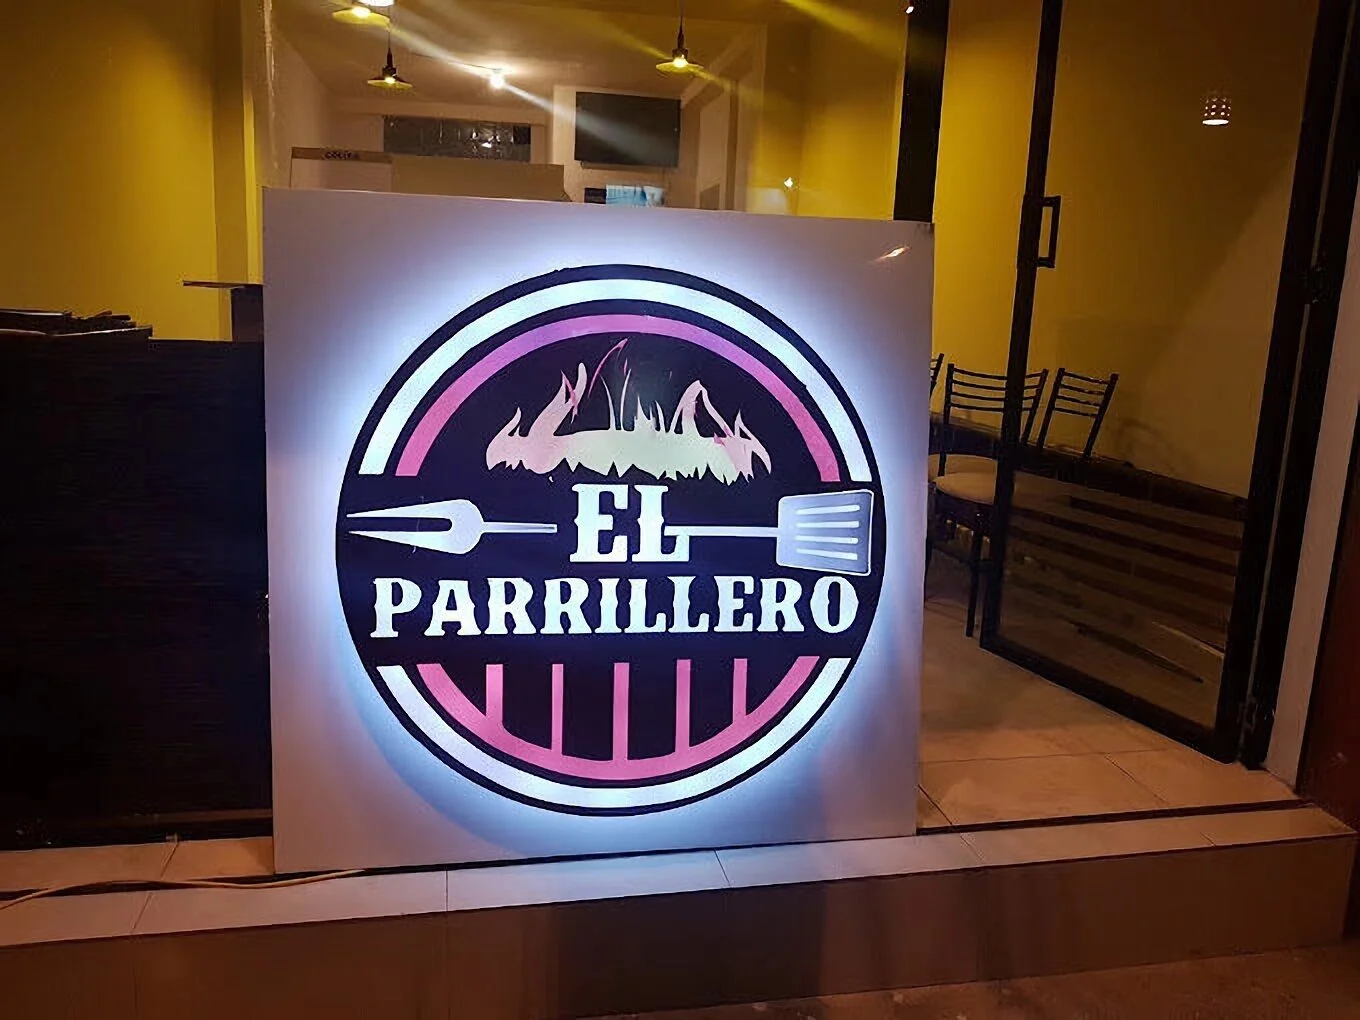 Restaurantes-el-parrillero-bbq-grill-18161